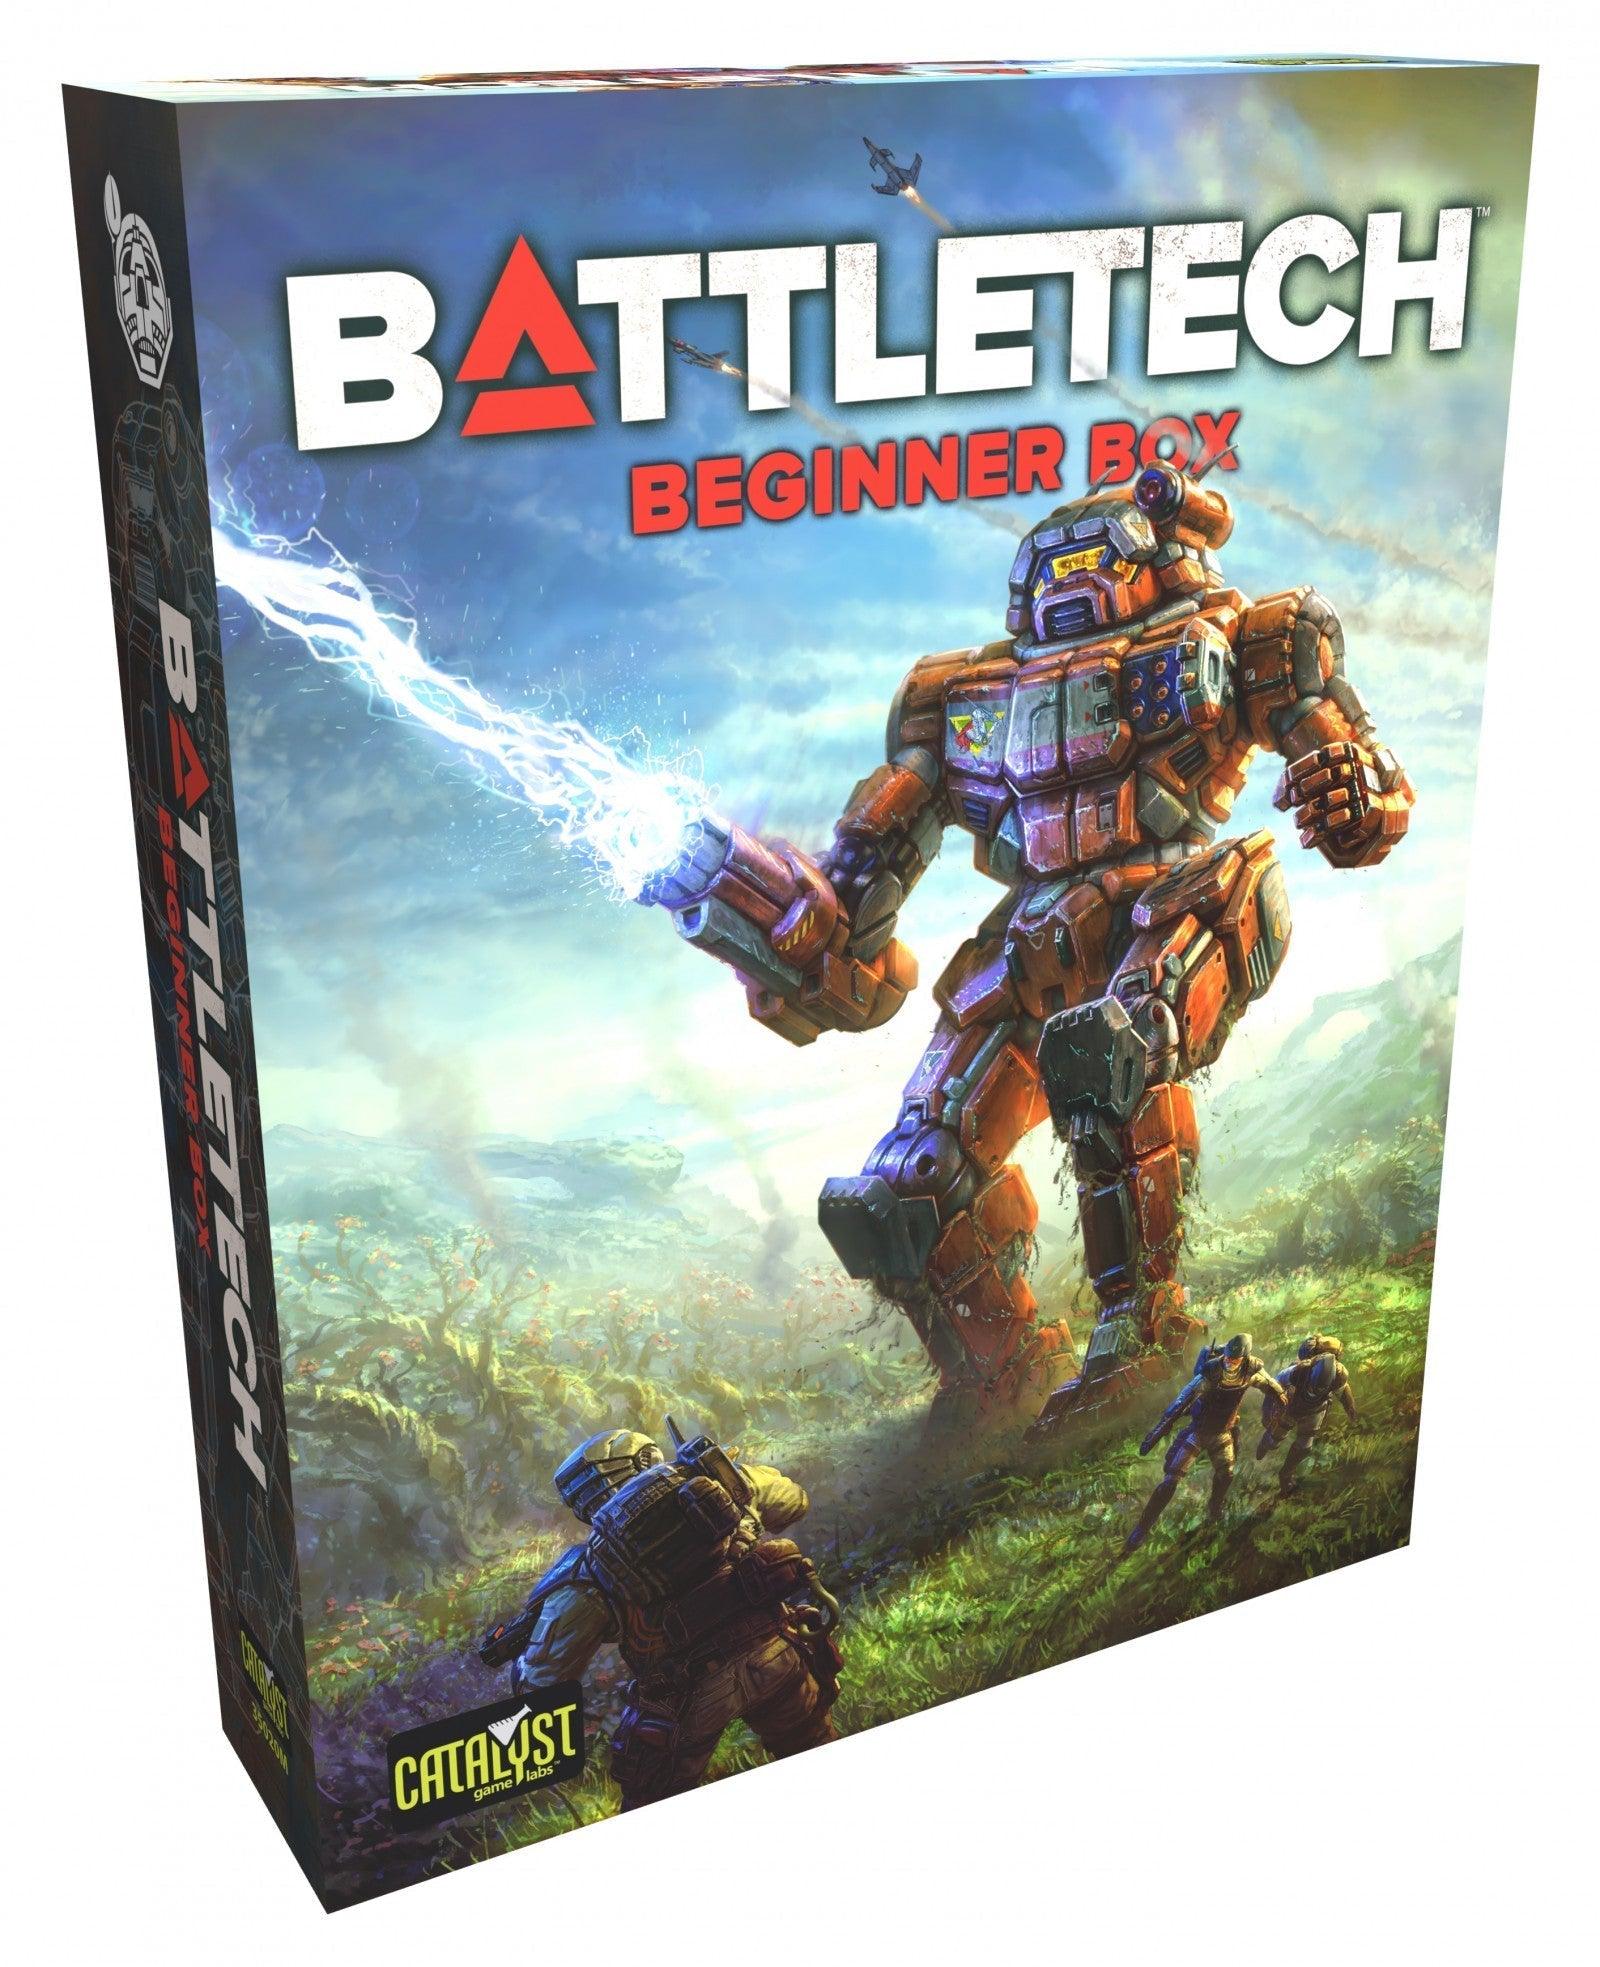 VR-101747 Battletech Beginner Box - Catalyst Game Labs - Titan Pop Culture